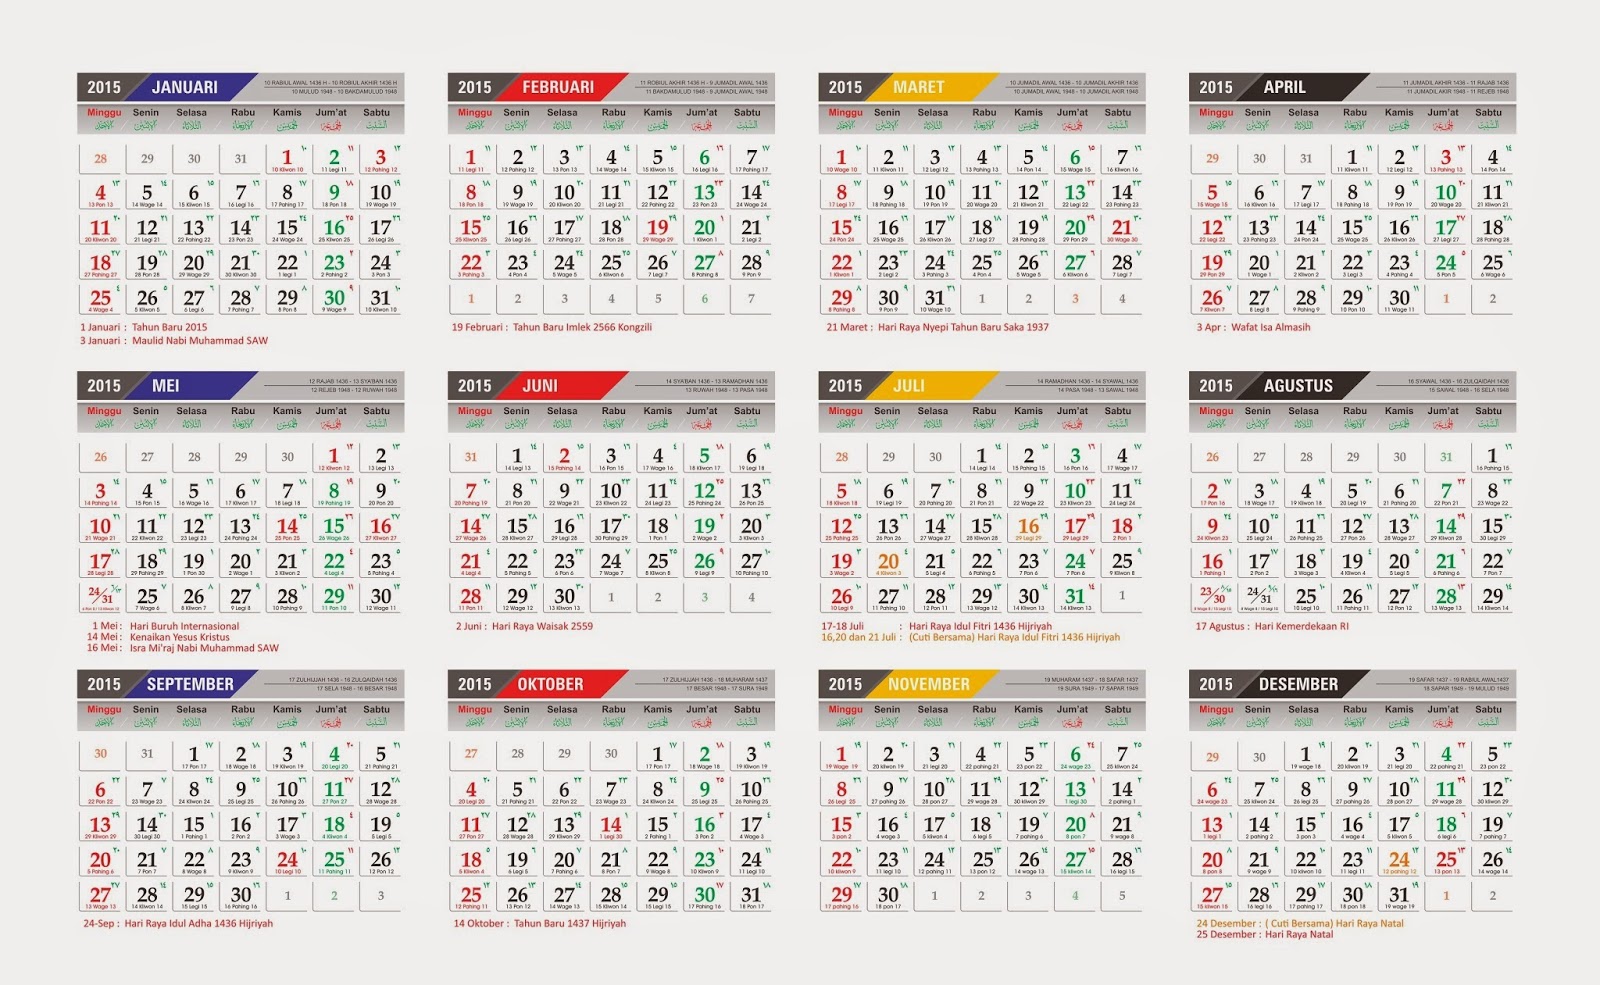 Download Kalender Nasional Dan Jawa 2021 Kalender Nasional Jawa Islam